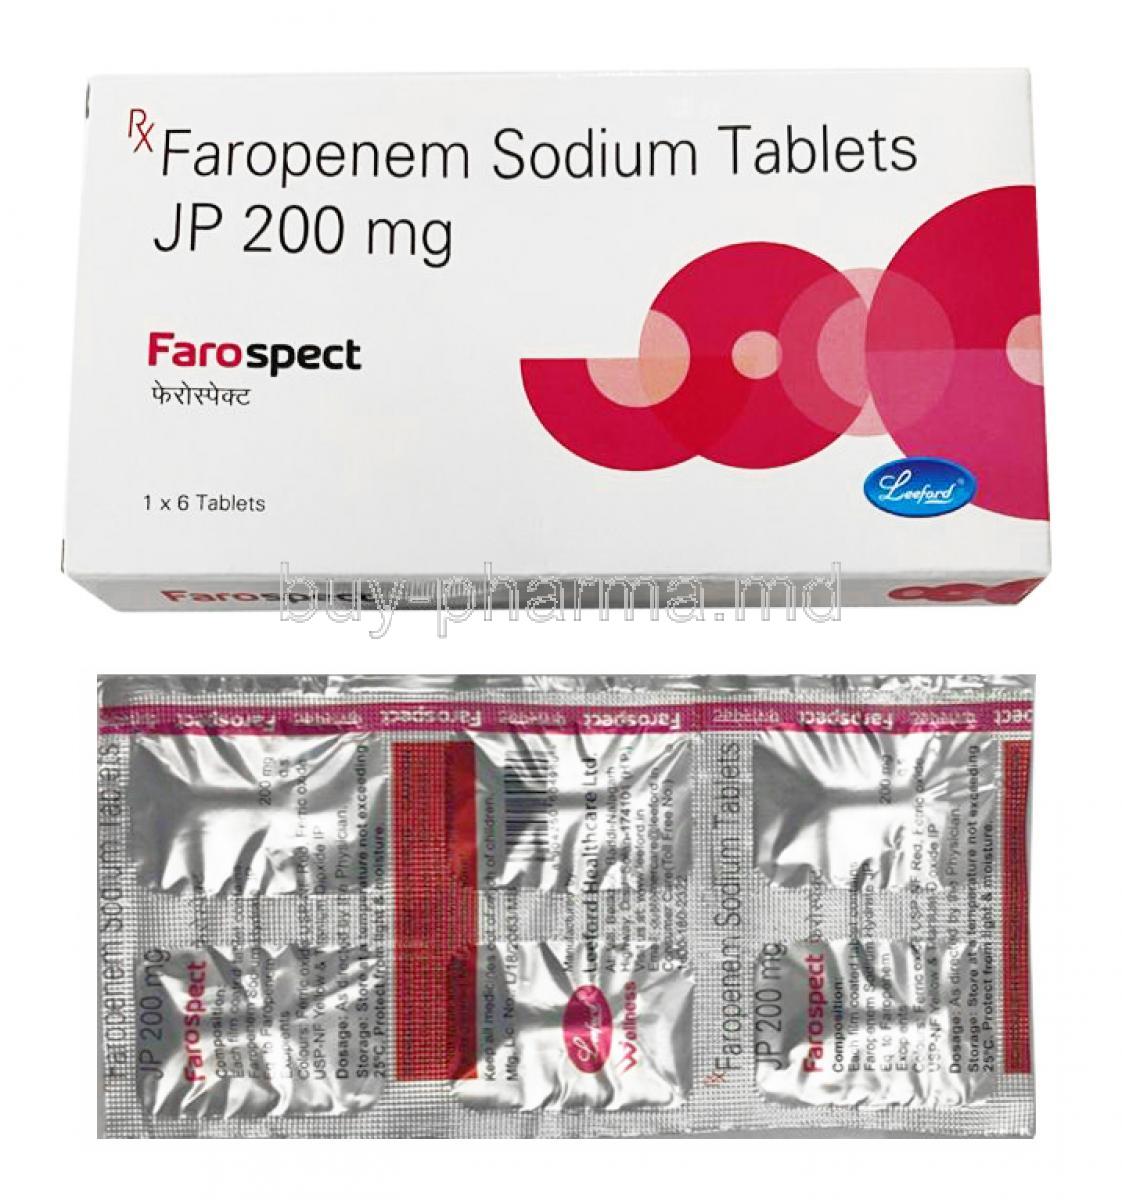 Farospect, Faropenem 200 mg box and tablet